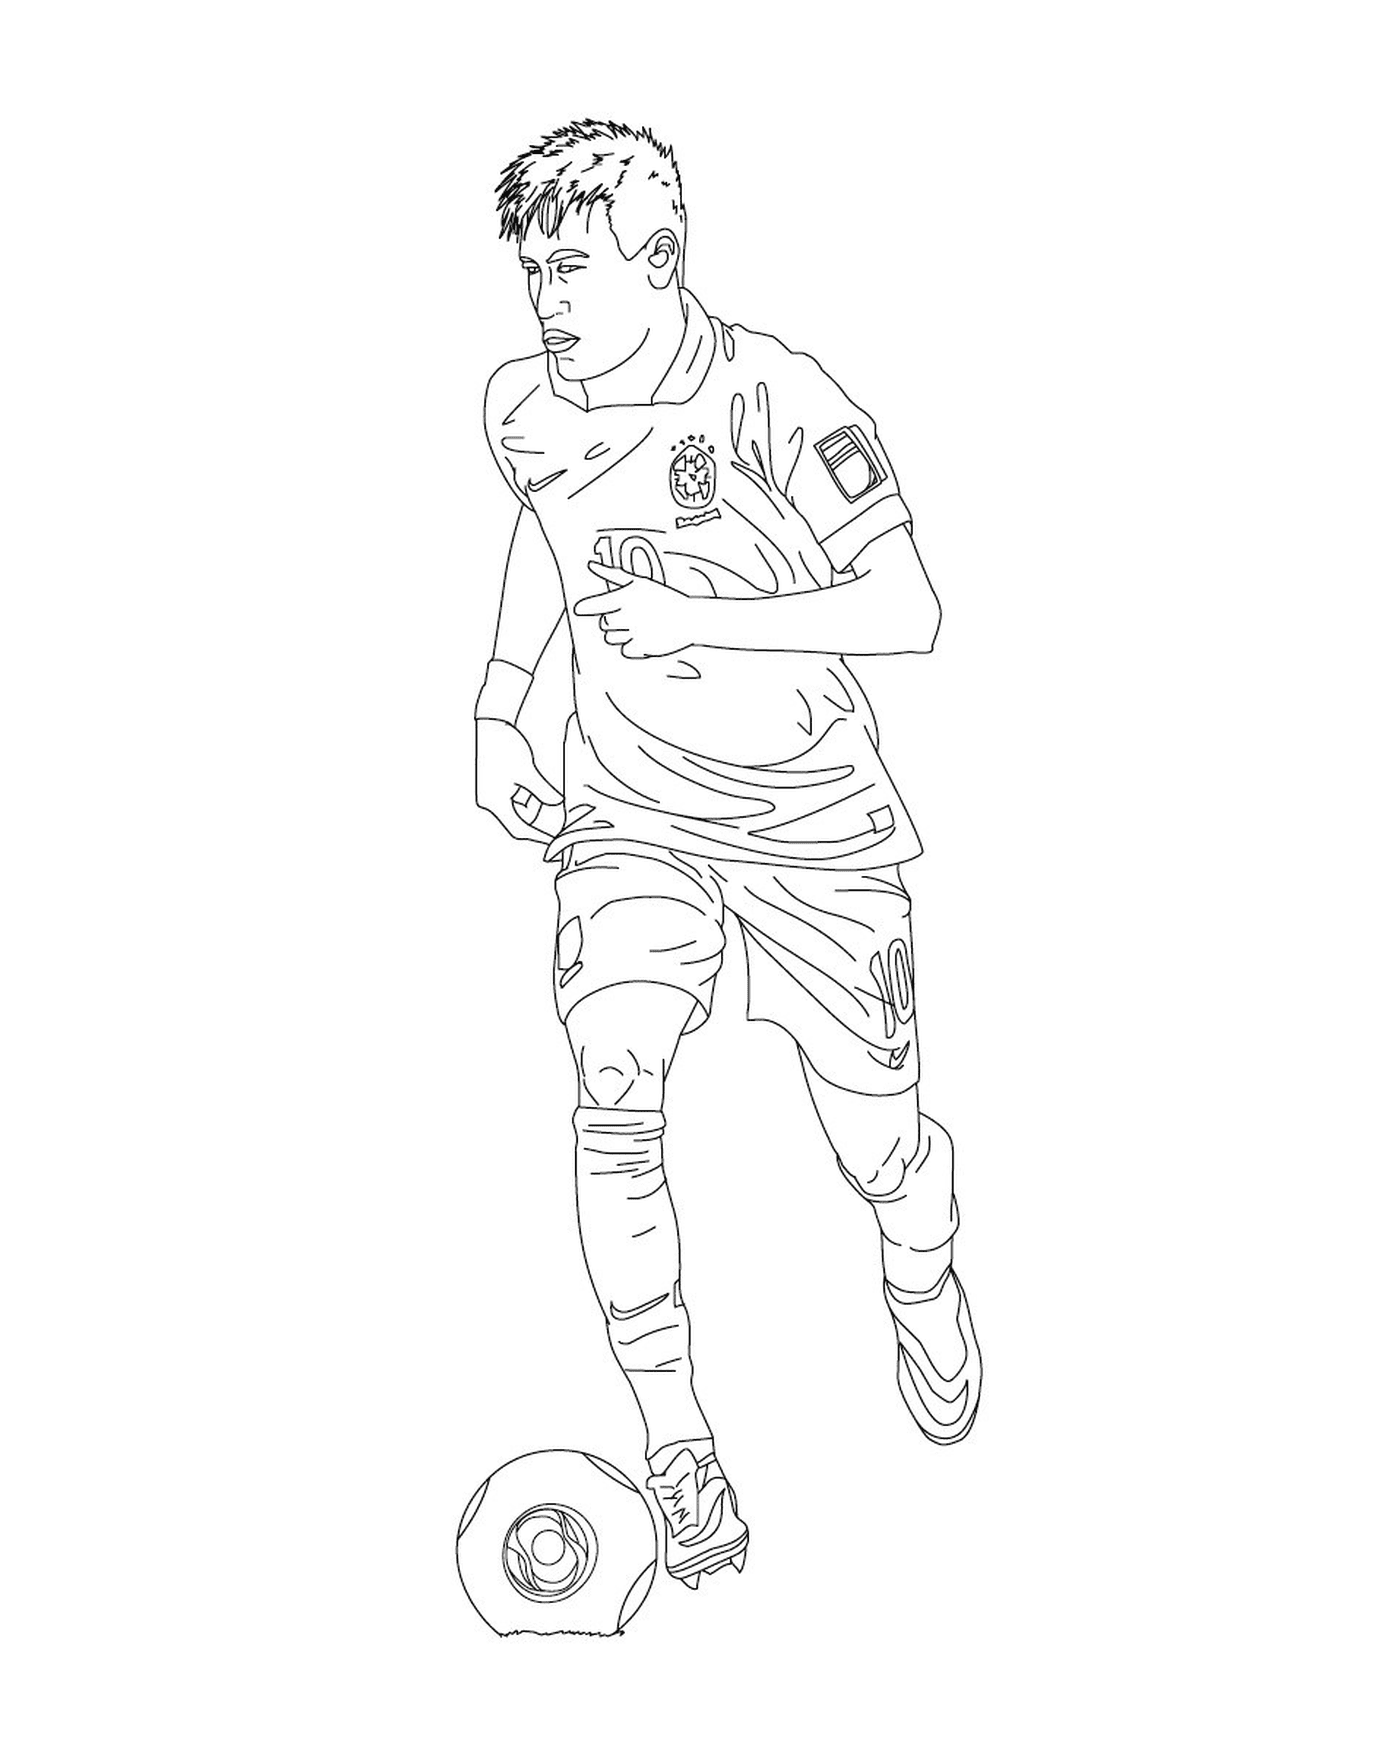   Un homme jouant au soccer, Neymar 